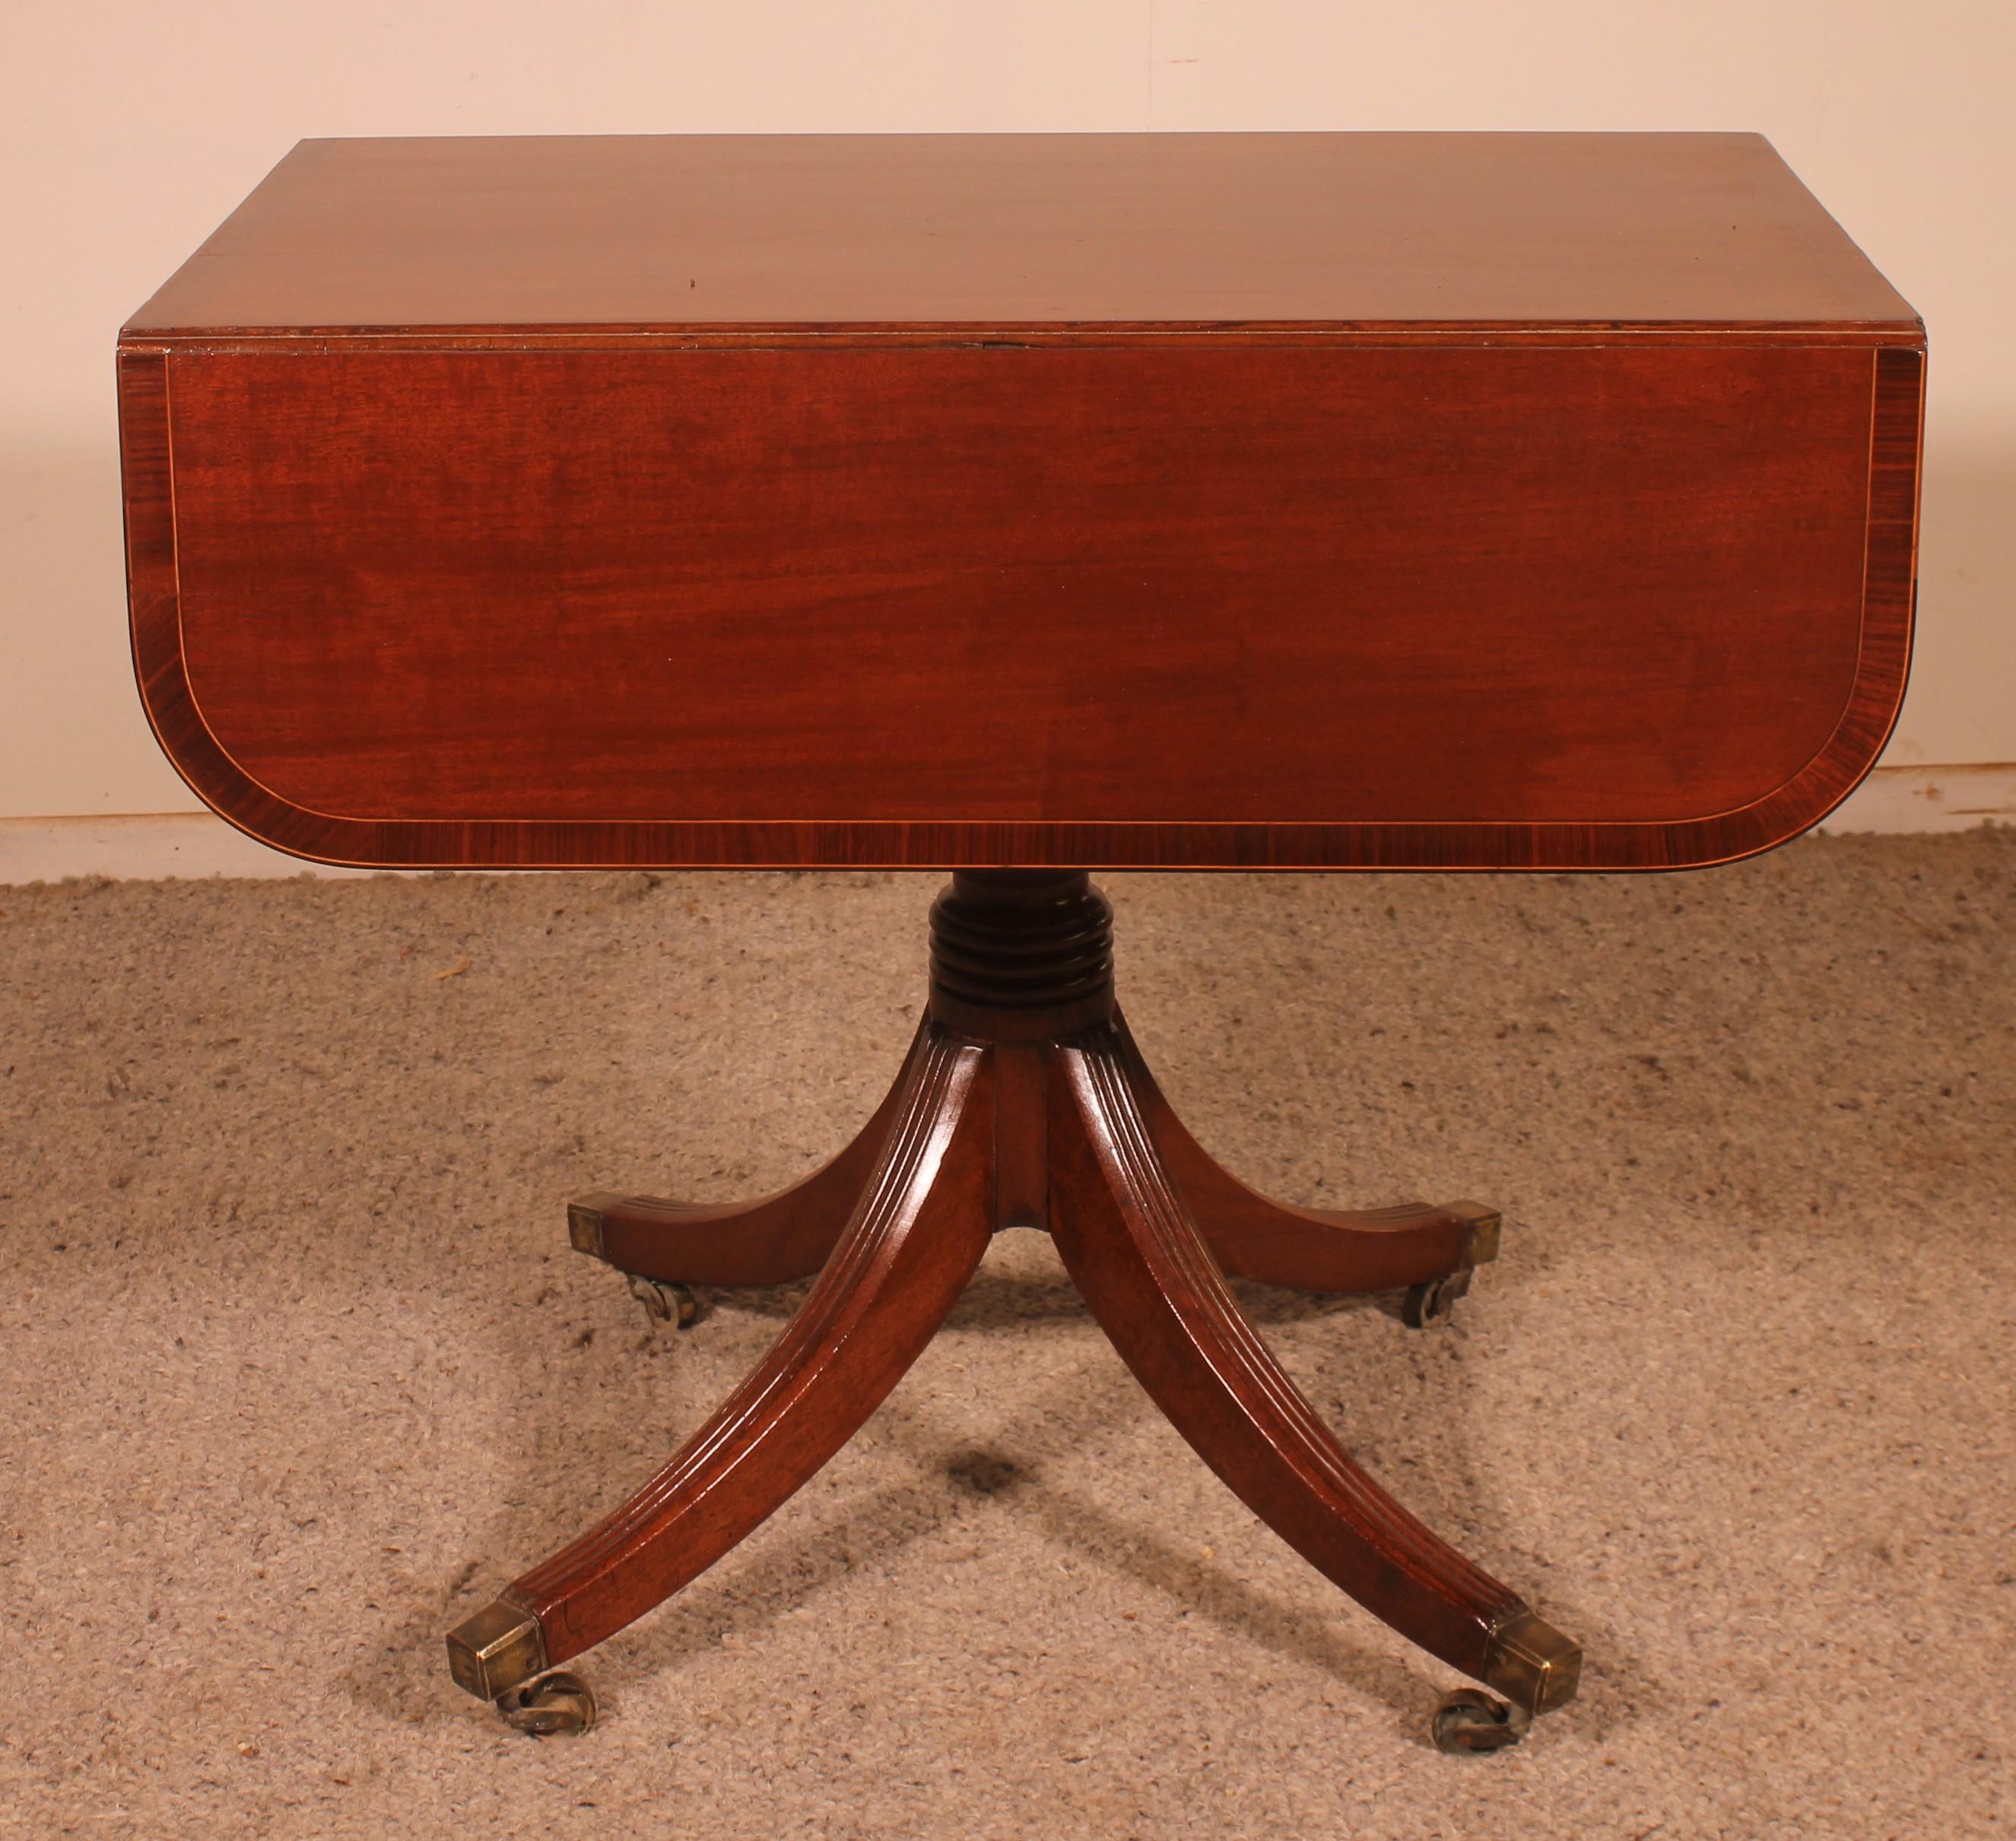 ein feiner englischer Pembroke-Tisch vom Anfang des 19. Jahrhunderts.

Sehr schöne Tischplatte in massivem Mahagoni mit einer schönen Flamme, die eine feine Einlage an den Rändern hat, die auf einem sehr schönen Vierfuß in massivem Mahagoni und